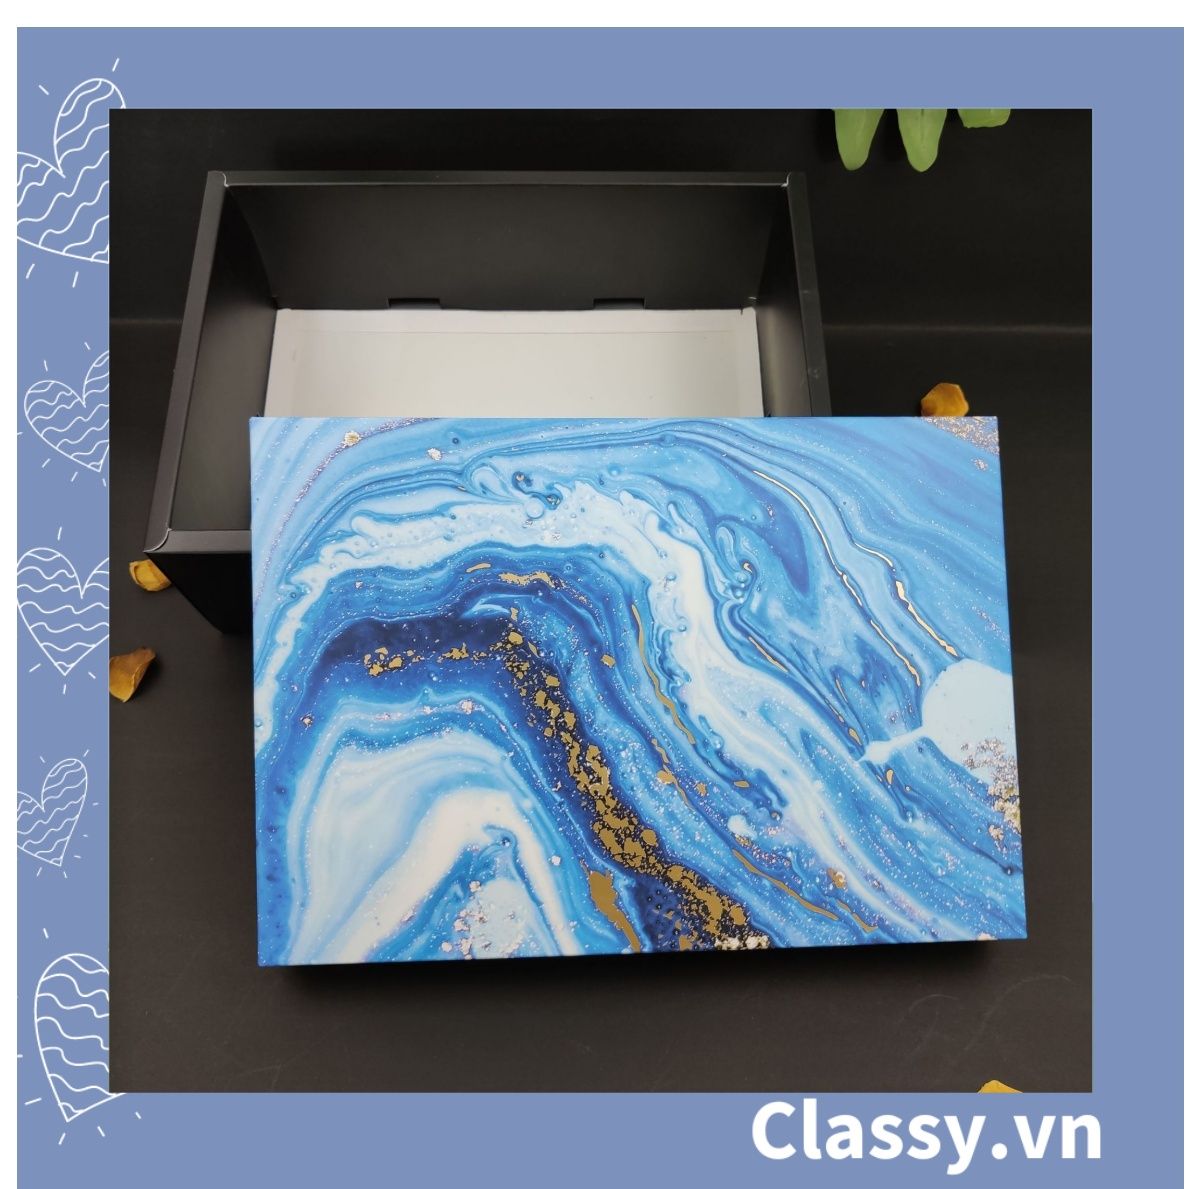  XÉ LẺ Túi giấy hoặc Hộp quà gấp kích thước 30,5x22x10cm quà tặng hoạ tiết đá cẩm thạch màu xanh blue Q754 